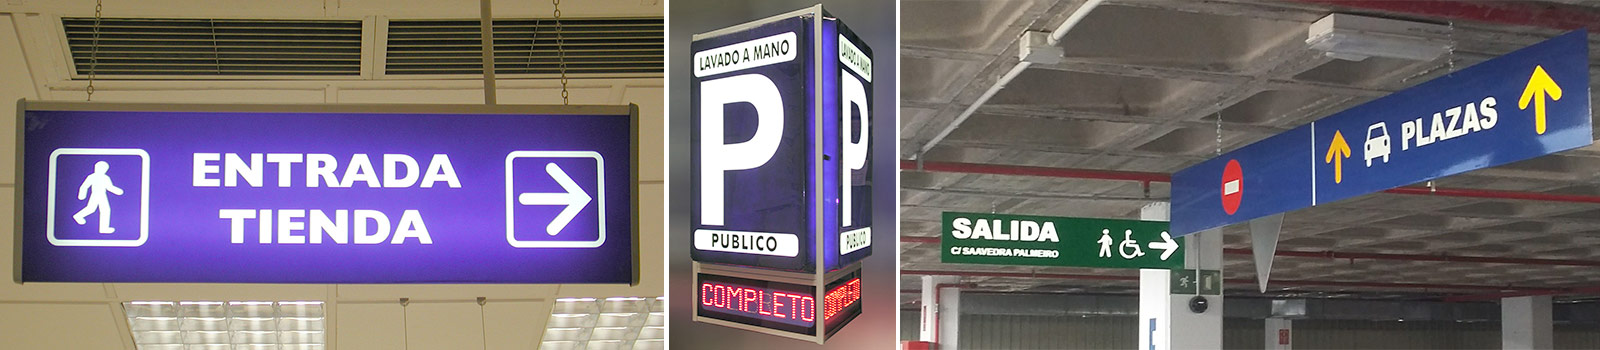 Rotulos para aparcamientos publicos.